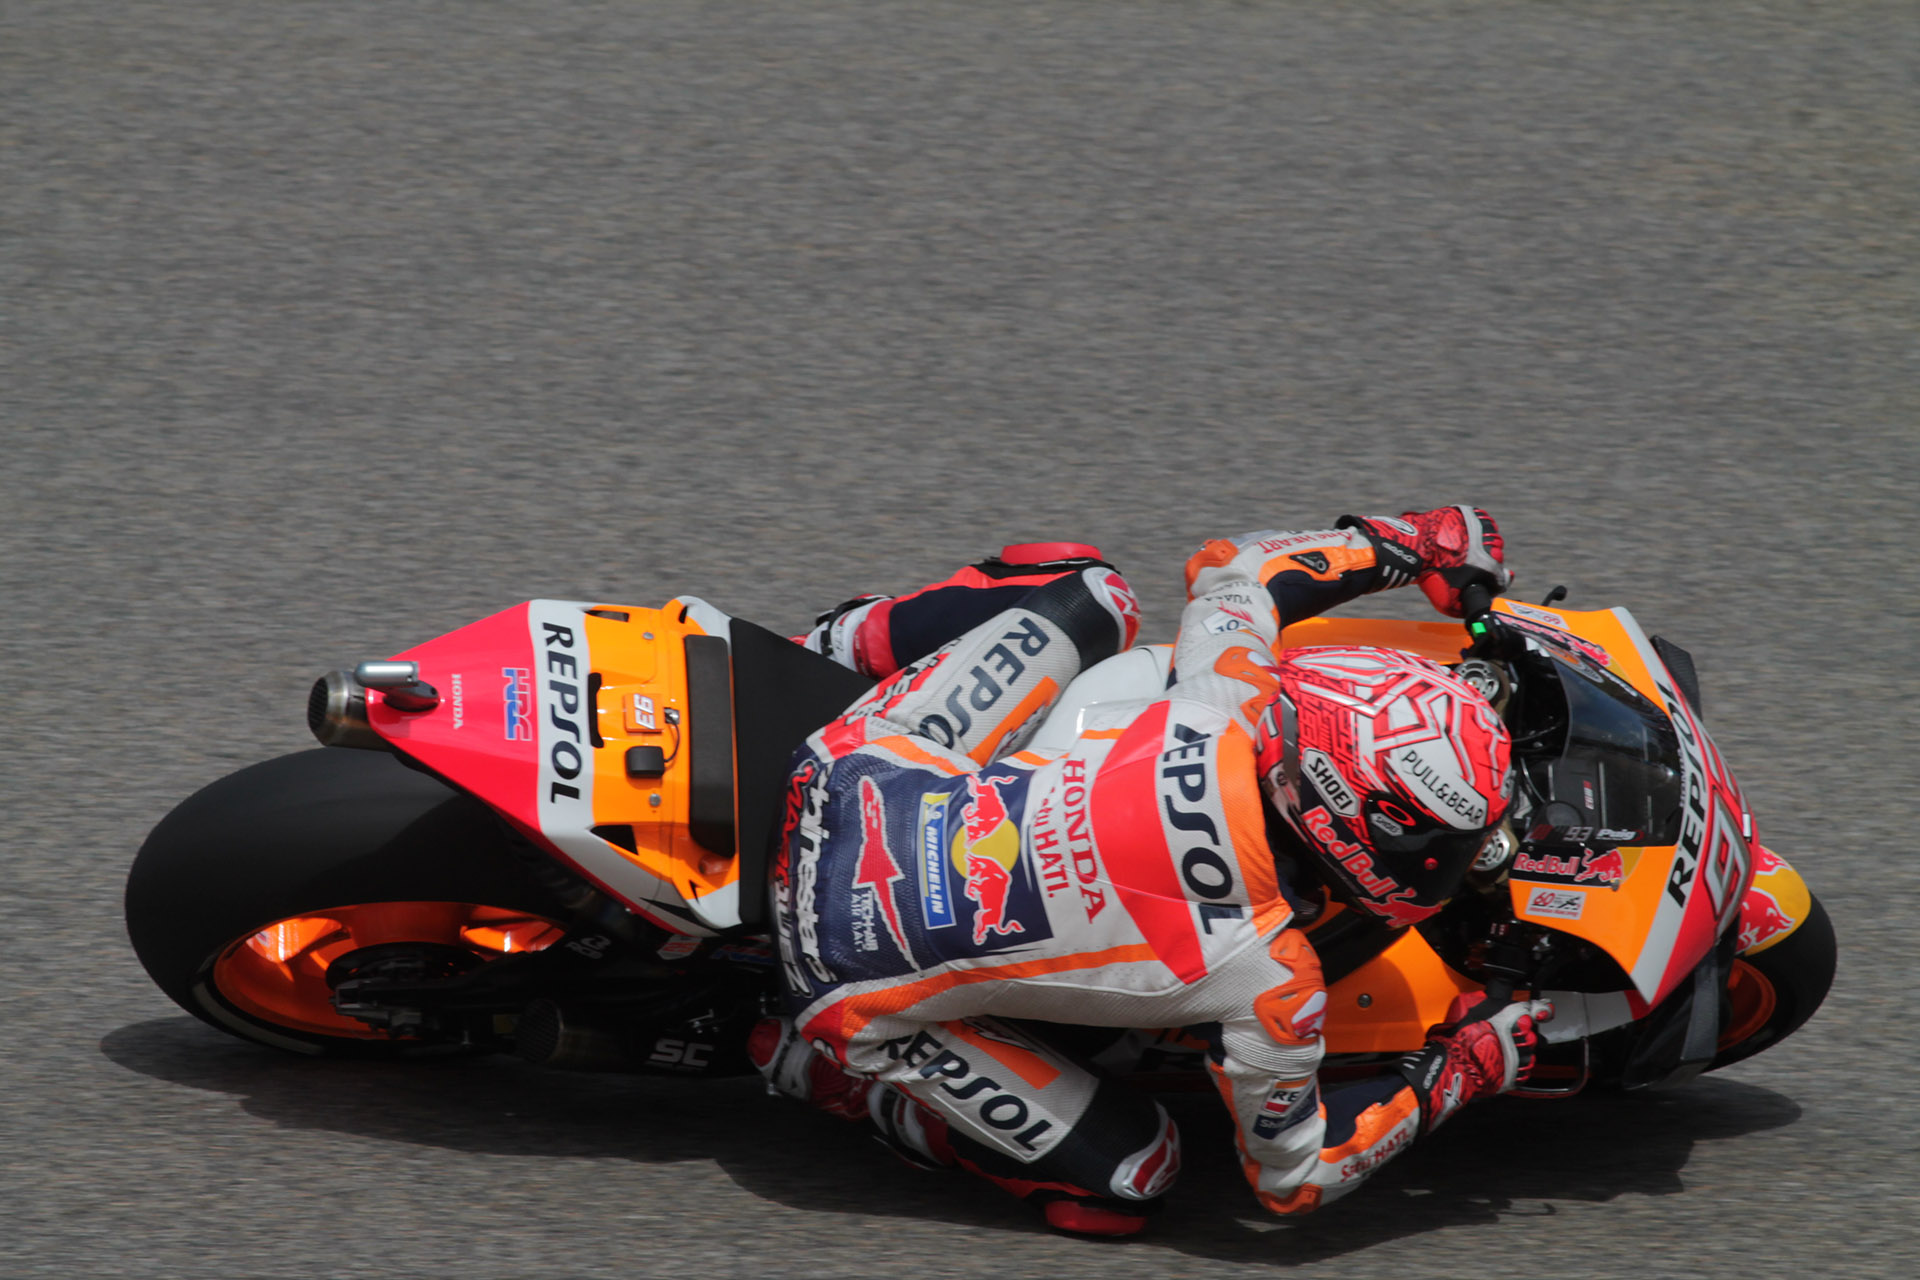 Der Spanier Marc Marquez (Honda) siegte in Thailand und wurde zum achten Mal Weltmeister